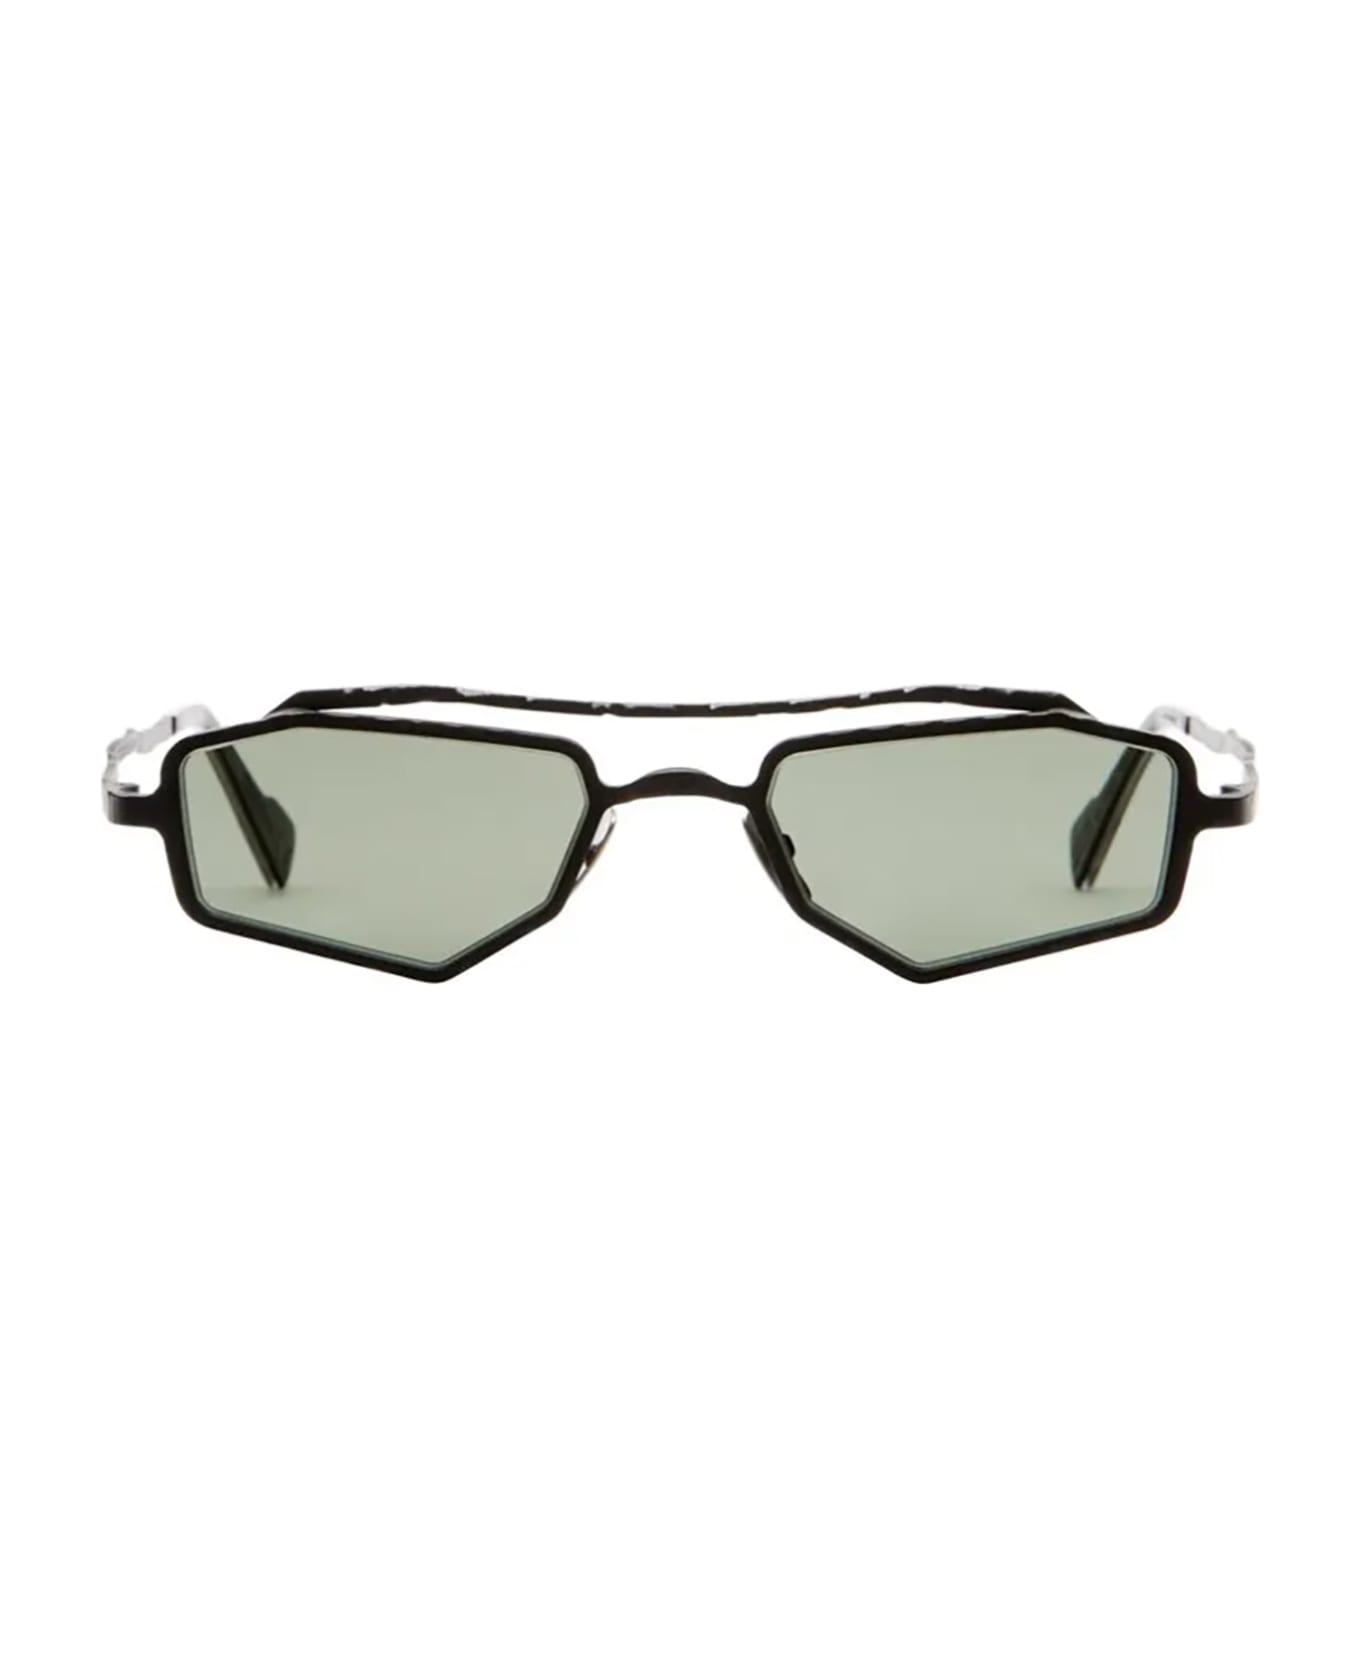 Kuboraum Z23 Sunglasses - Bmf Green